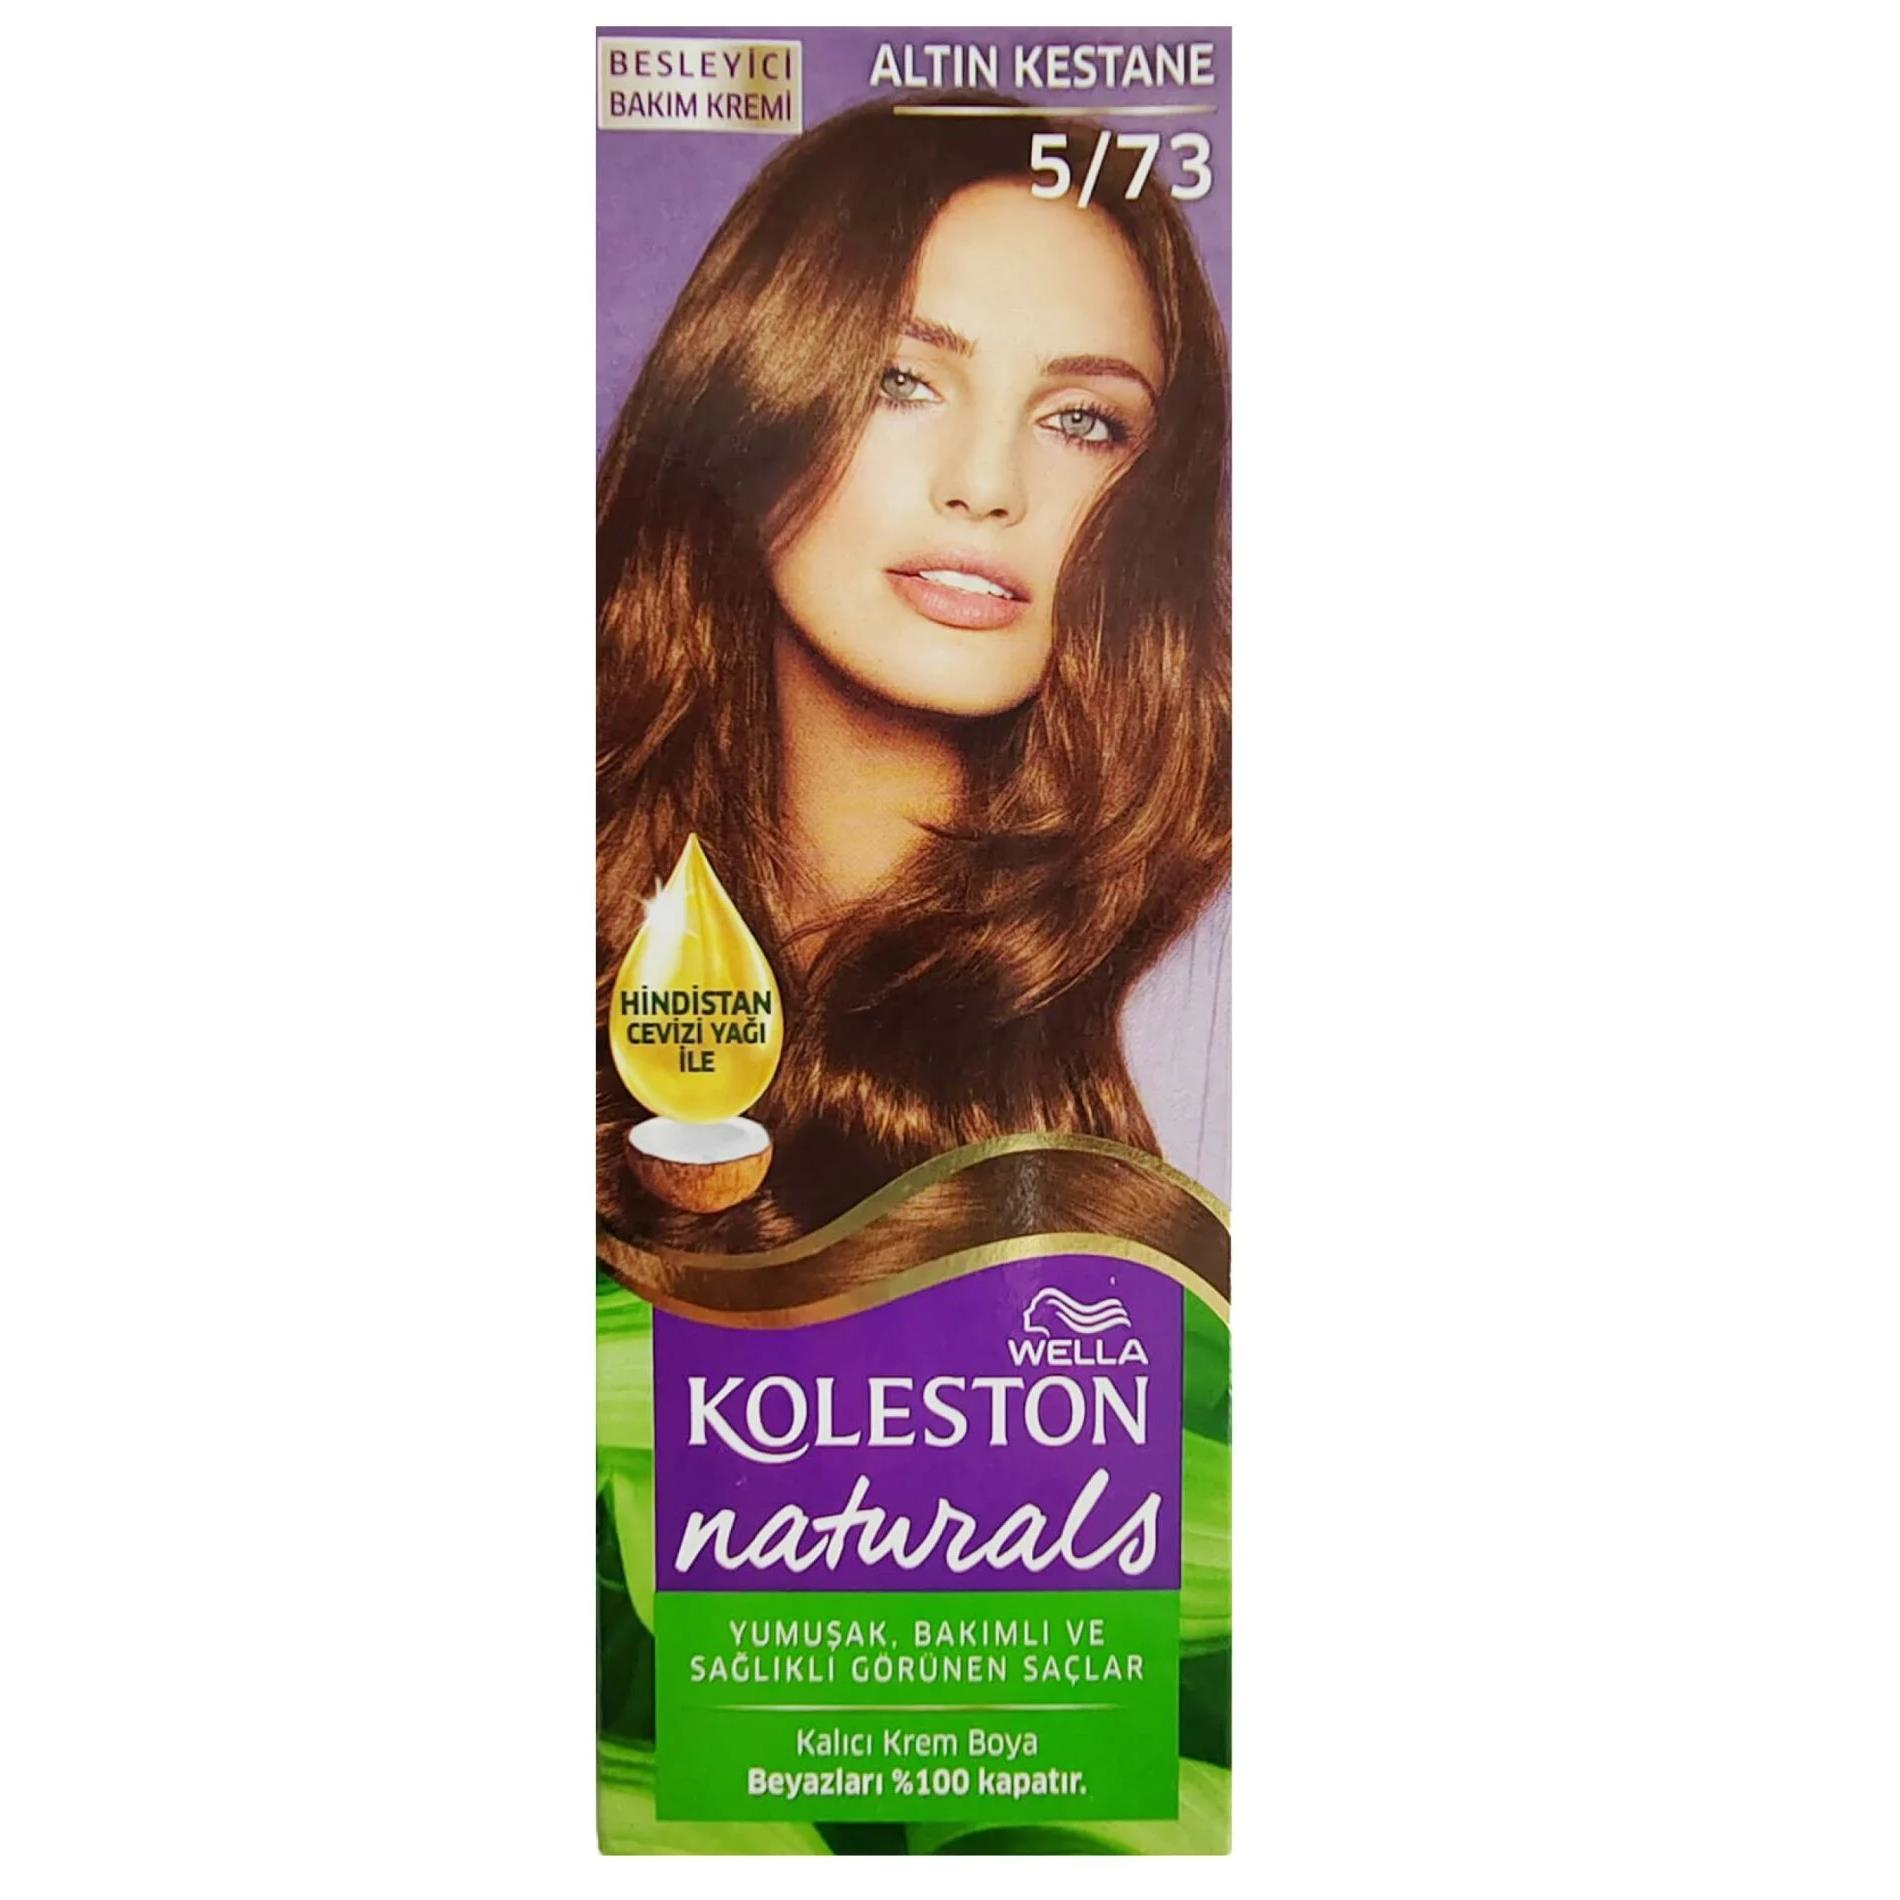 Koleston Naturals Saç Boyası 5/73 Altın Kestane